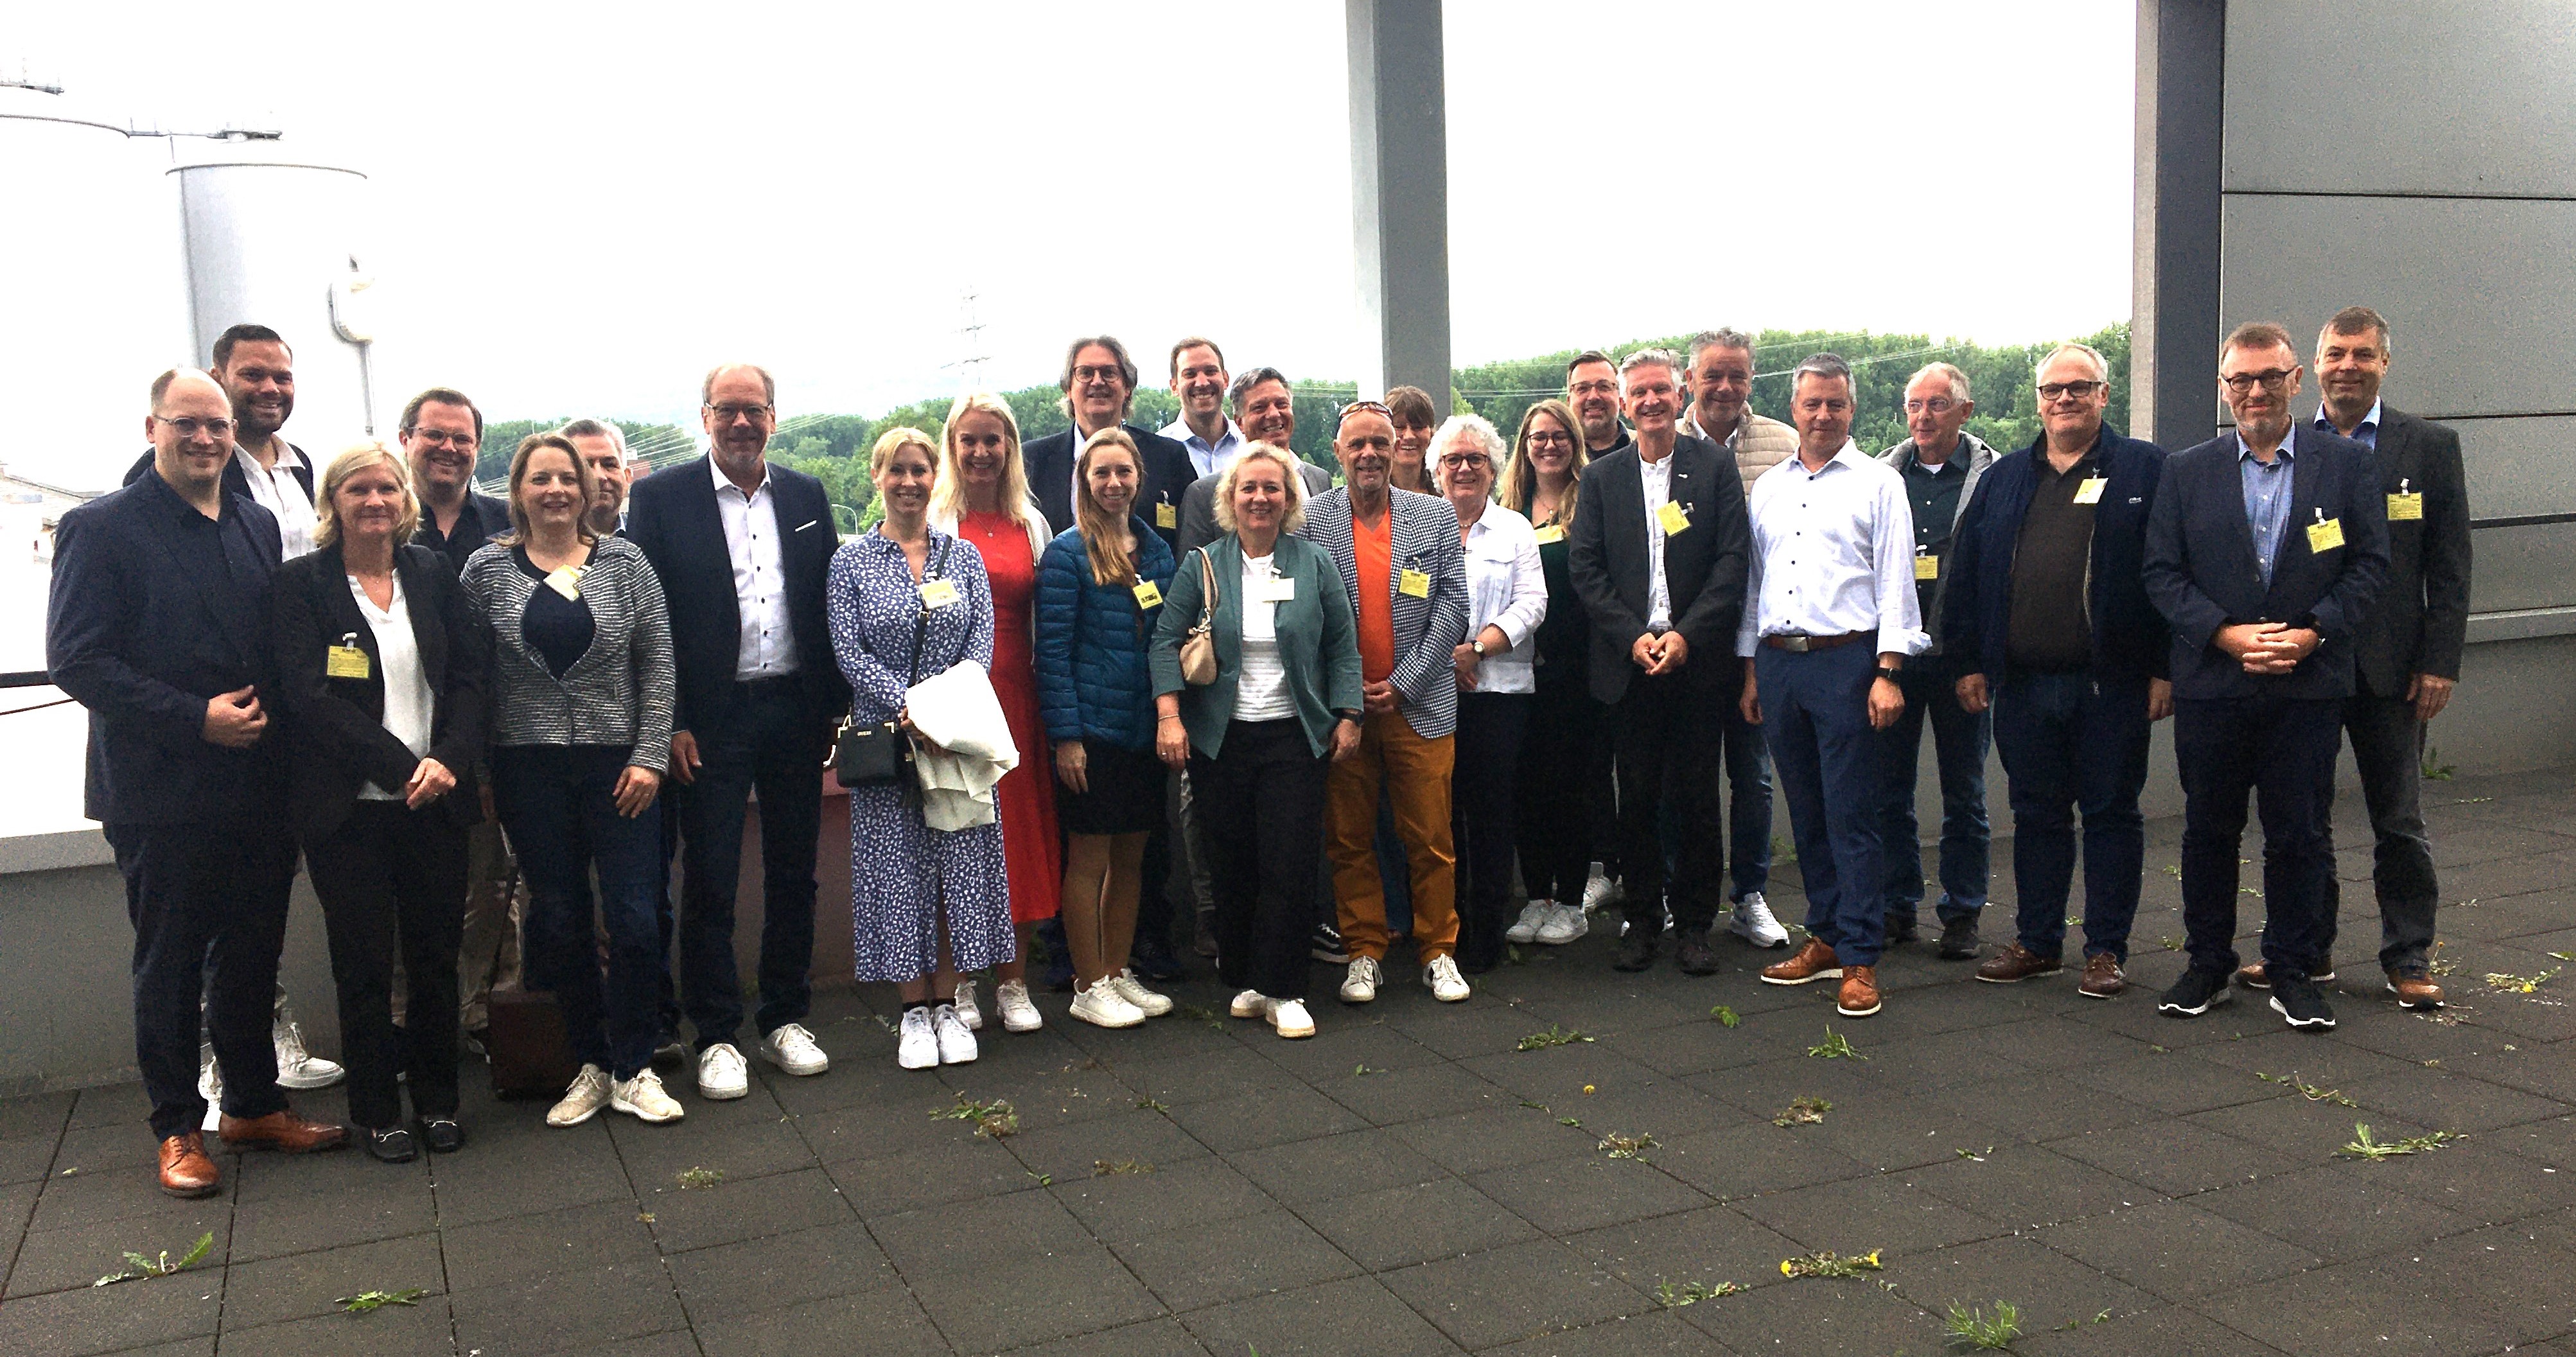 Exkursion zum „Data-Center Ökosystem Rhein-Main“ brachte wichtige Erkenntnisse über digitale Infrastrukturen 